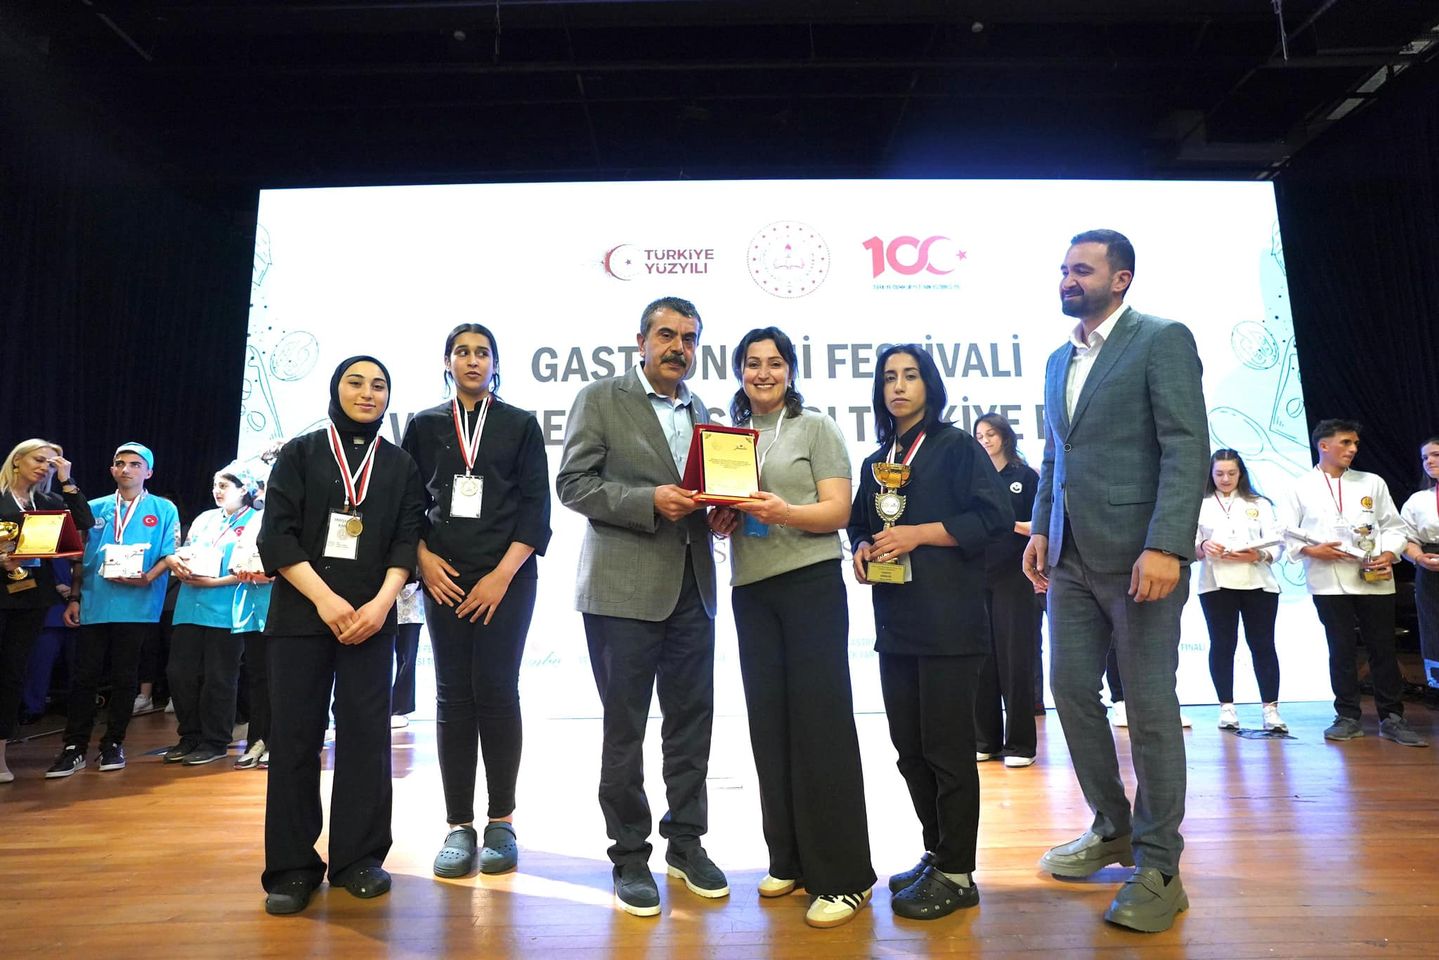 Milli Eğitim Bakanı Yusuf Tekin, Gastronomi Festivali'nde Yemek Yarışması Finallerine Katıldı